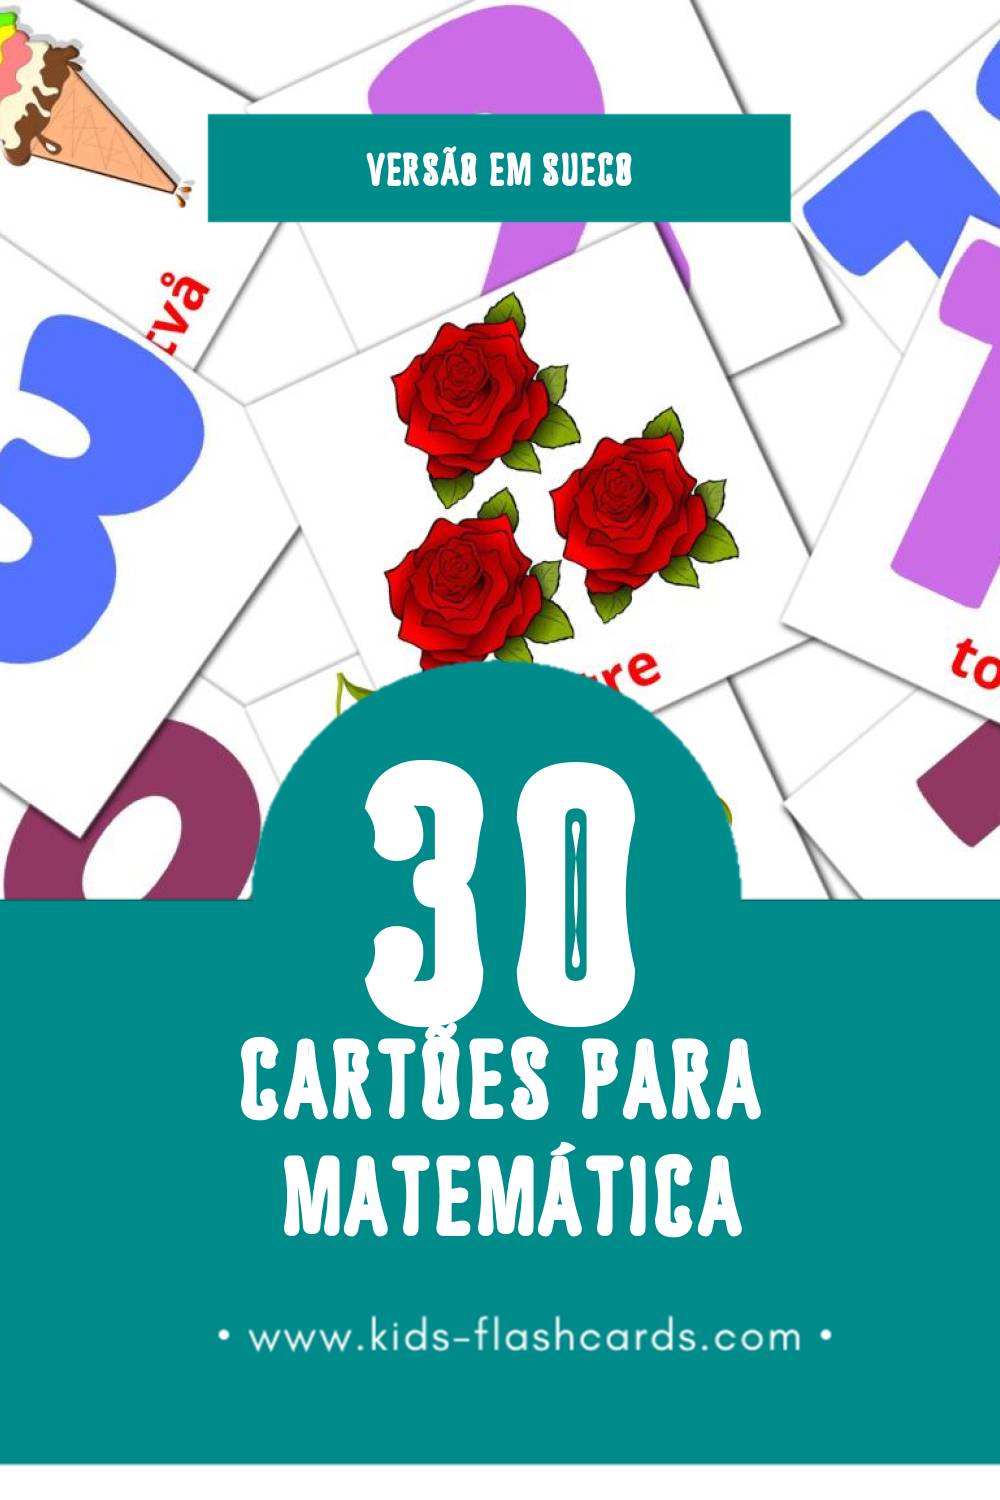 Flashcards de Matematik Visuais para Toddlers (30 cartões em Sueco)